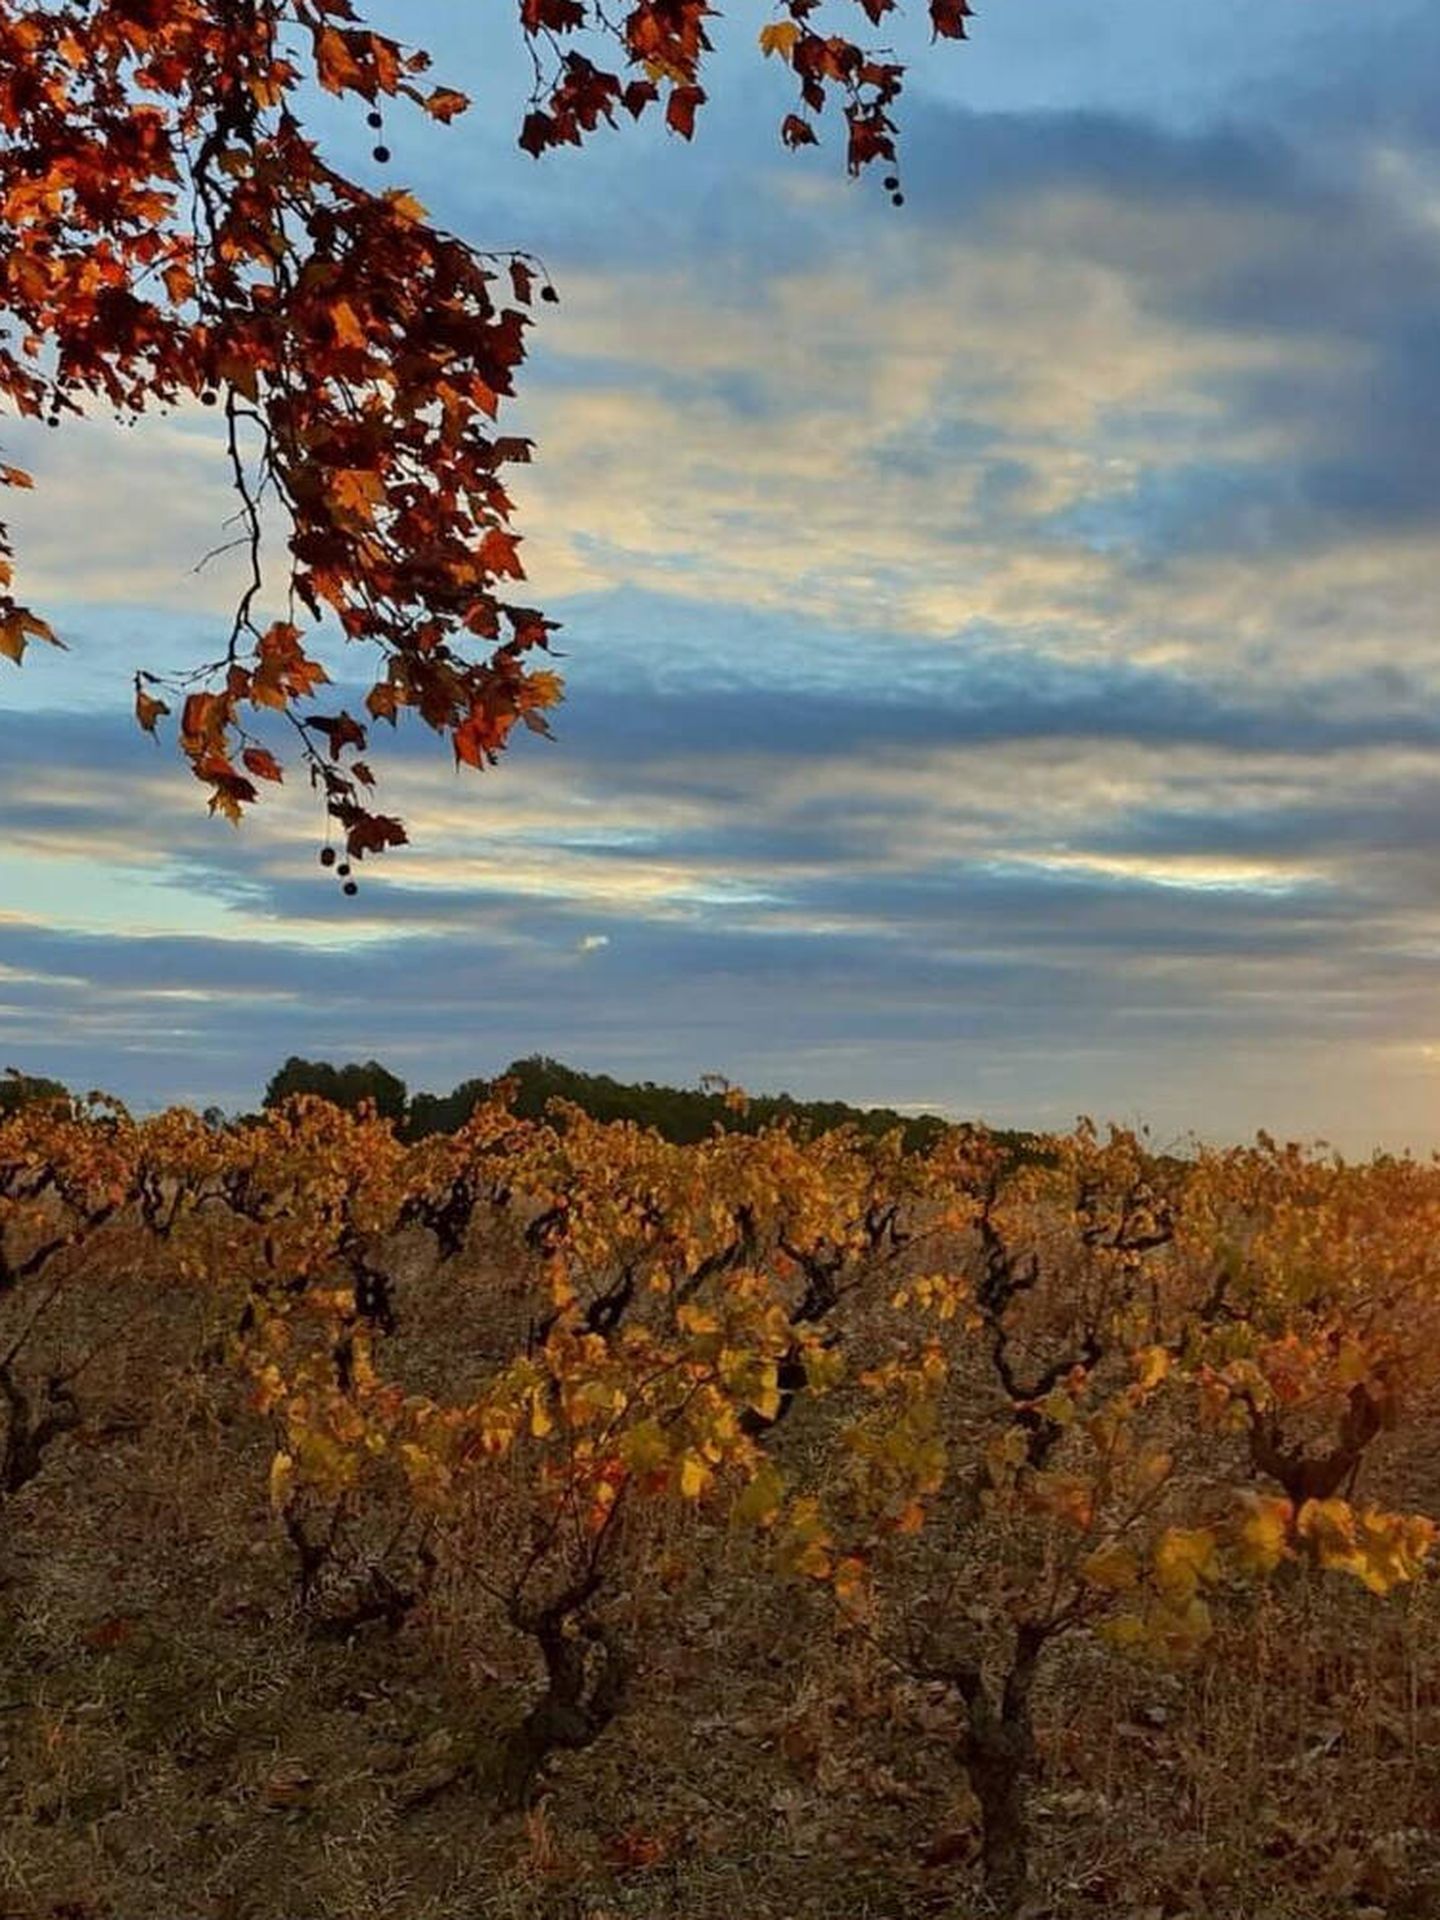 Los viñedos de MontRubí, en los que brilla la variedad sumoll, albergan hotel y restaurante de nivel. (Cortesía)